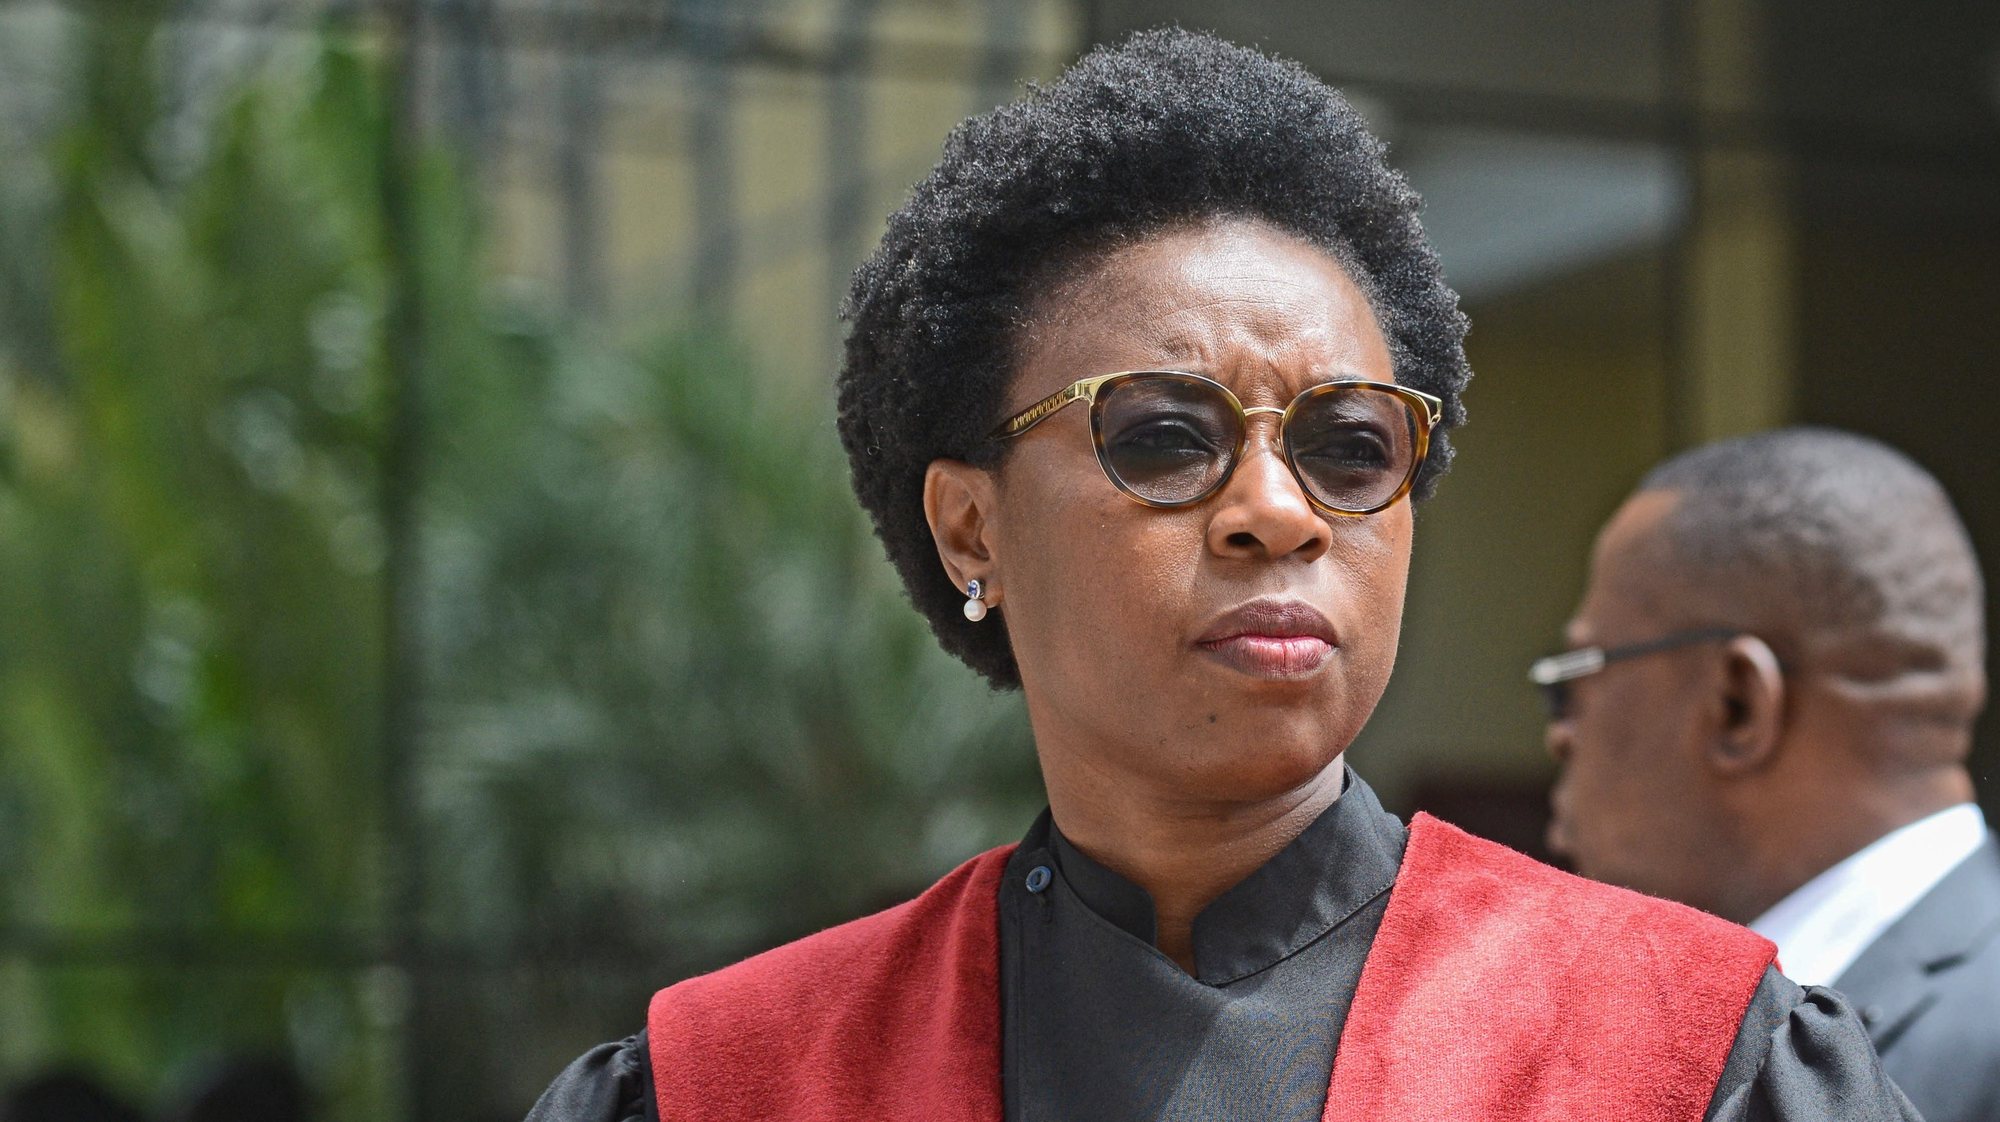 A procuradora-geral da República, Beatriz Buchili, durante a cerimónia oficial de abertura do ano judicial, em Maputo, Moçambique, 04 de fevereiro de 2020. ANTÓNIO SILVA/LUSA